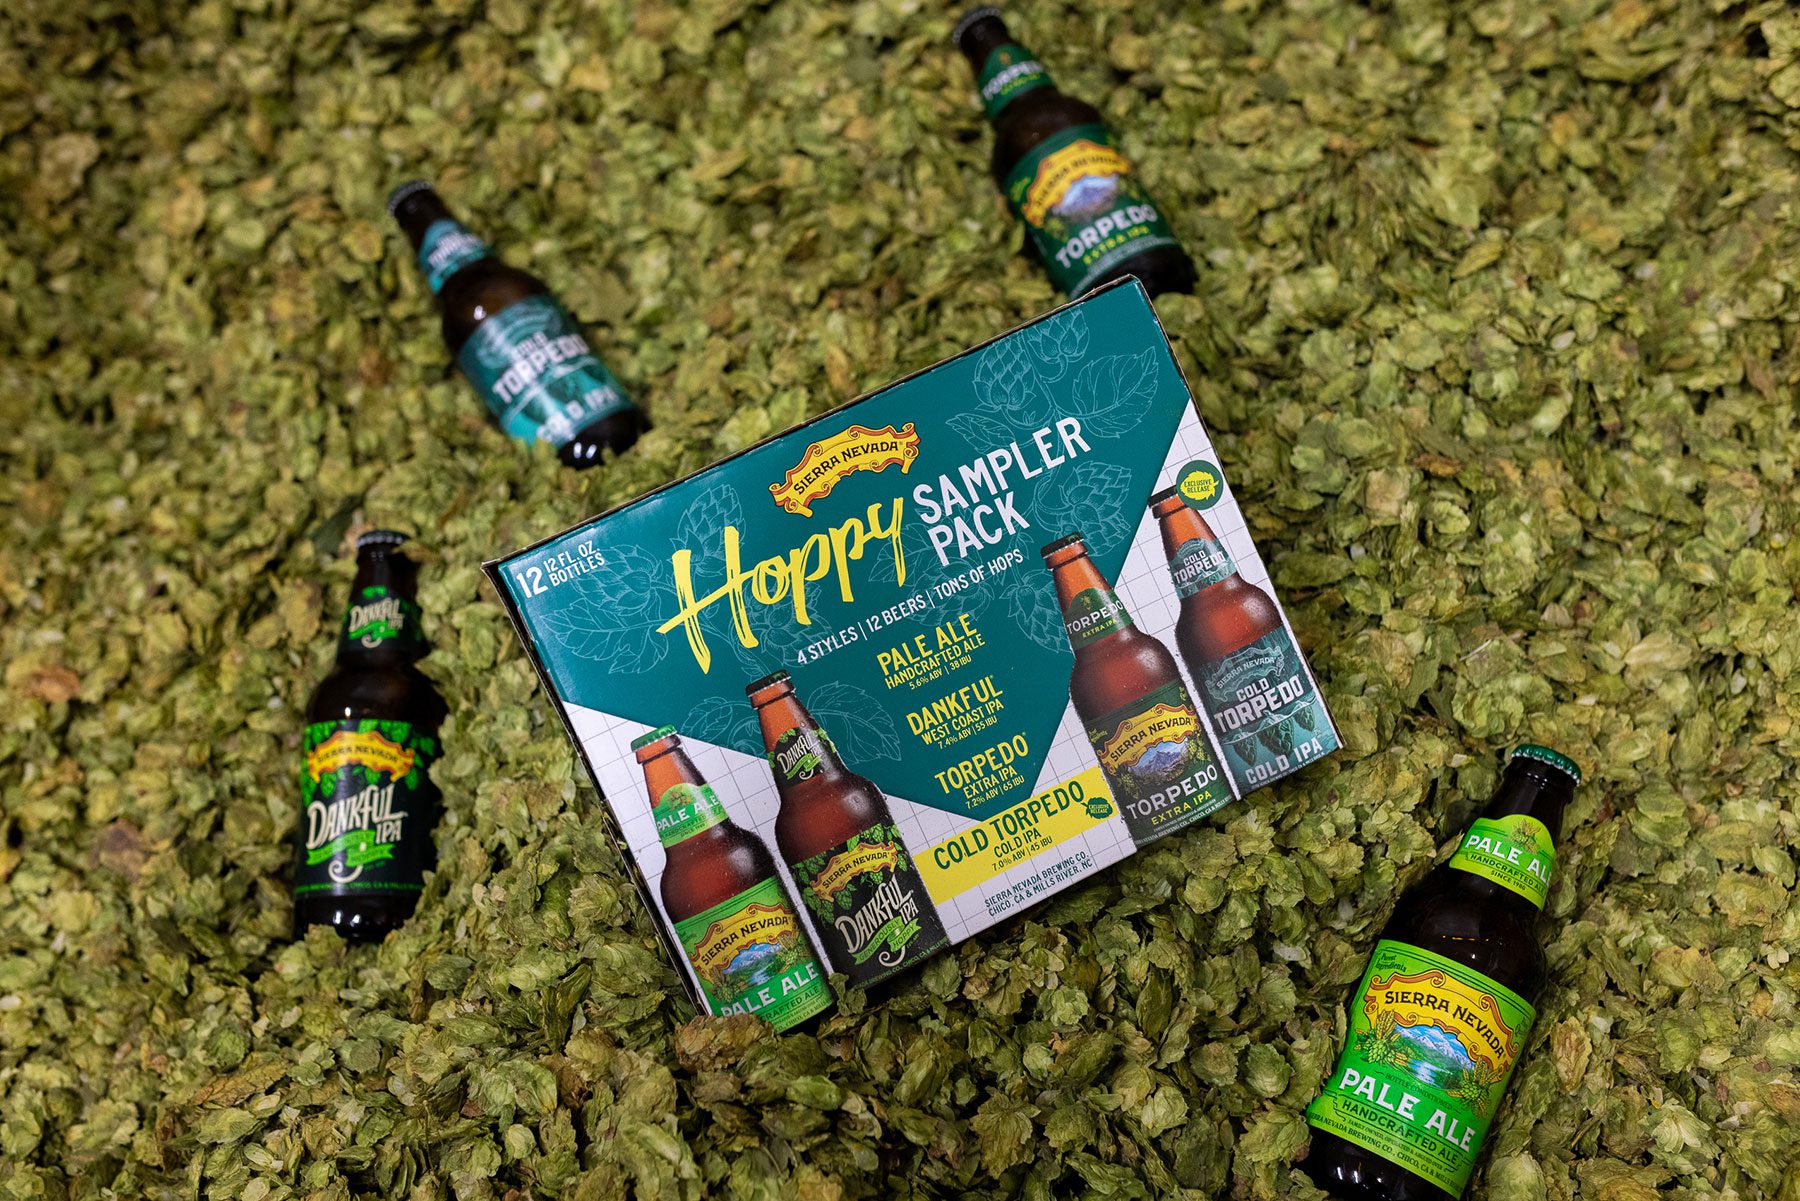 Sierra Nevada's Hoppy Sampler mixed pack in a pile of hops